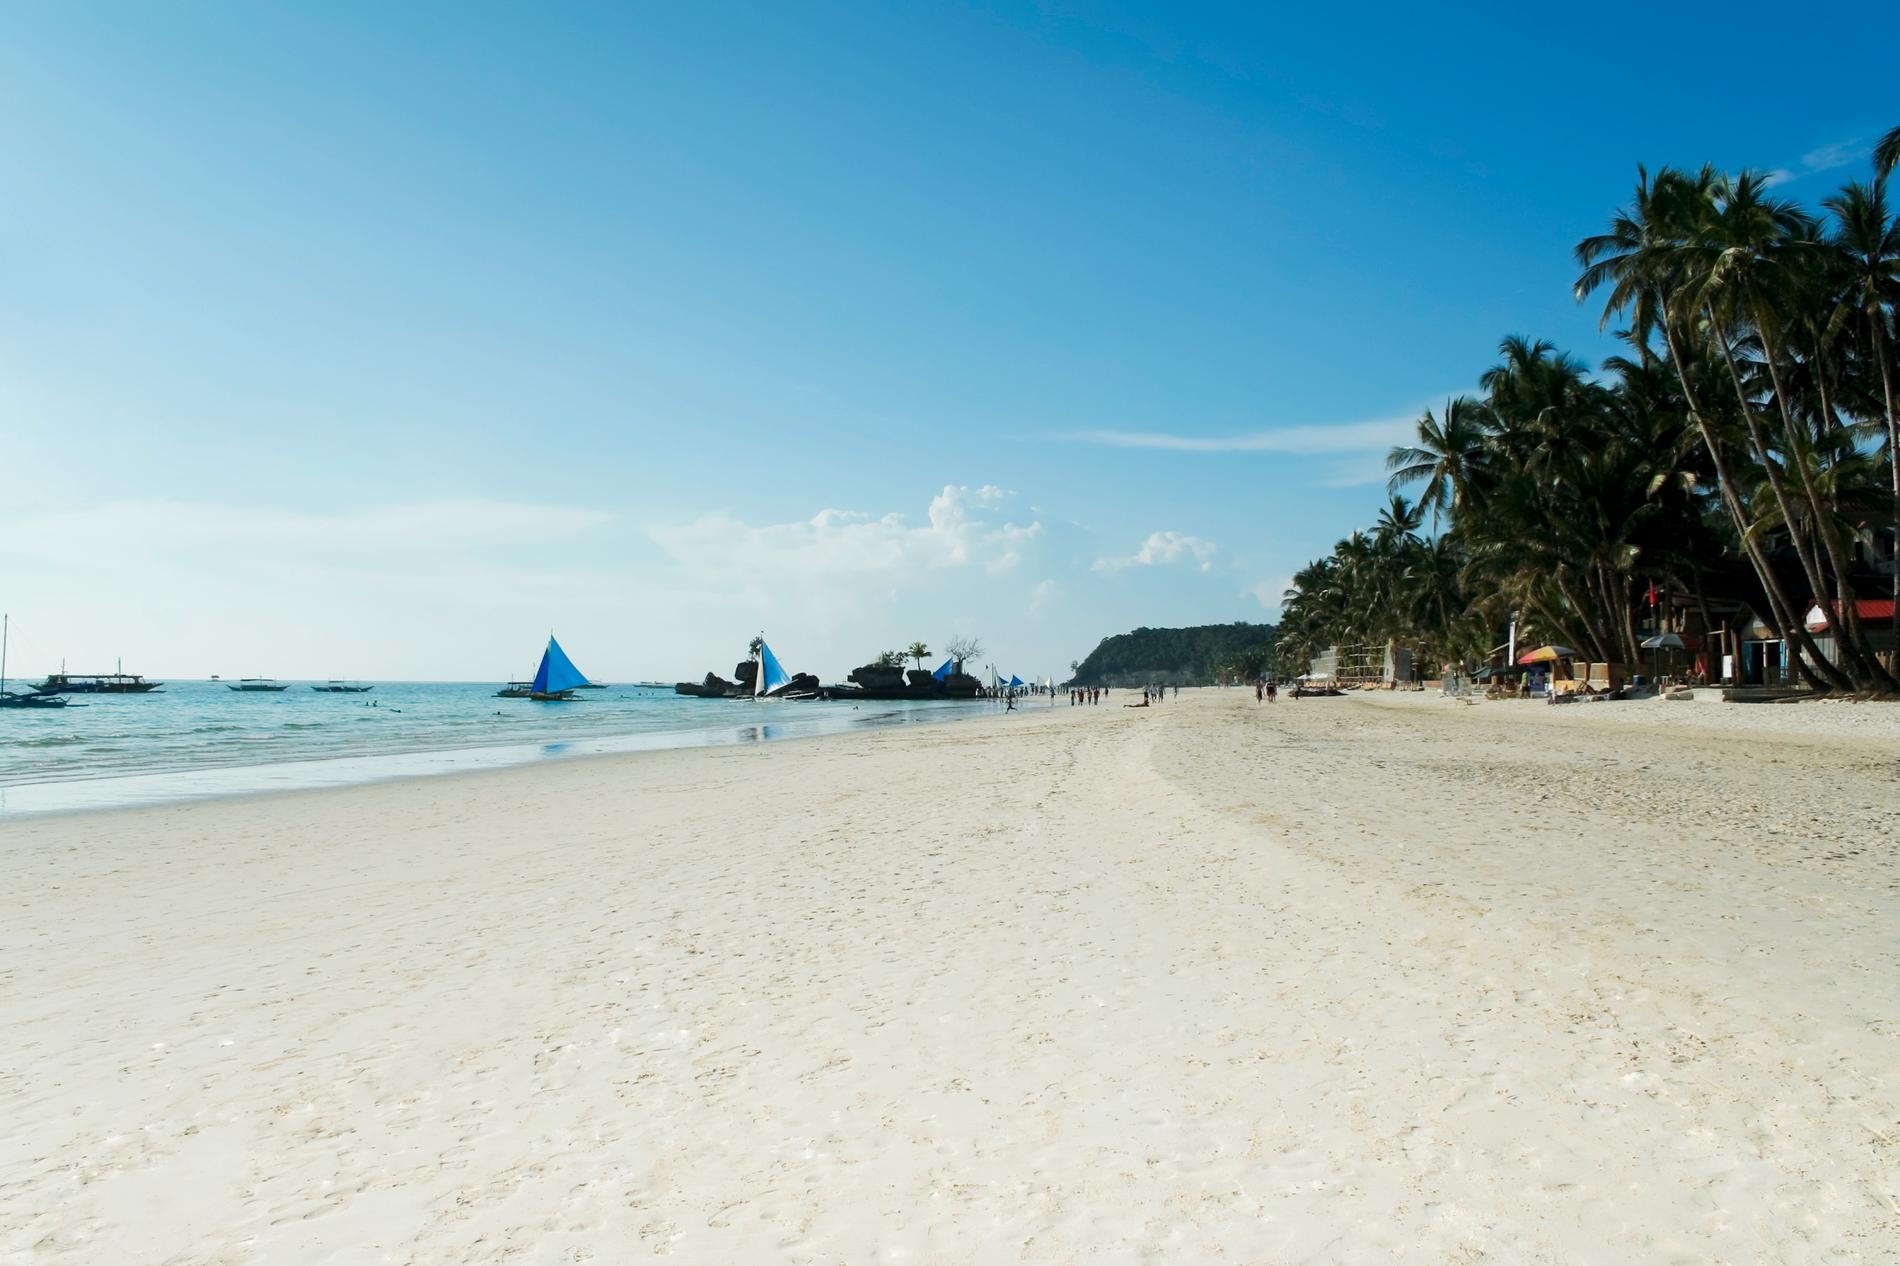 2. Boracay, Filippinerna En av Filippinernas drygt 7000 öar och landets populäraste turistmål har alldeles magifika stränder. Det kristallklara vattnet är fritt från farliga strömmar, dykningen håller världsklass, sanden är bländande och pudermjuk - och du slipper trängas! Missa inte att se solen gå ner i det glödande havet utanför White Beach.